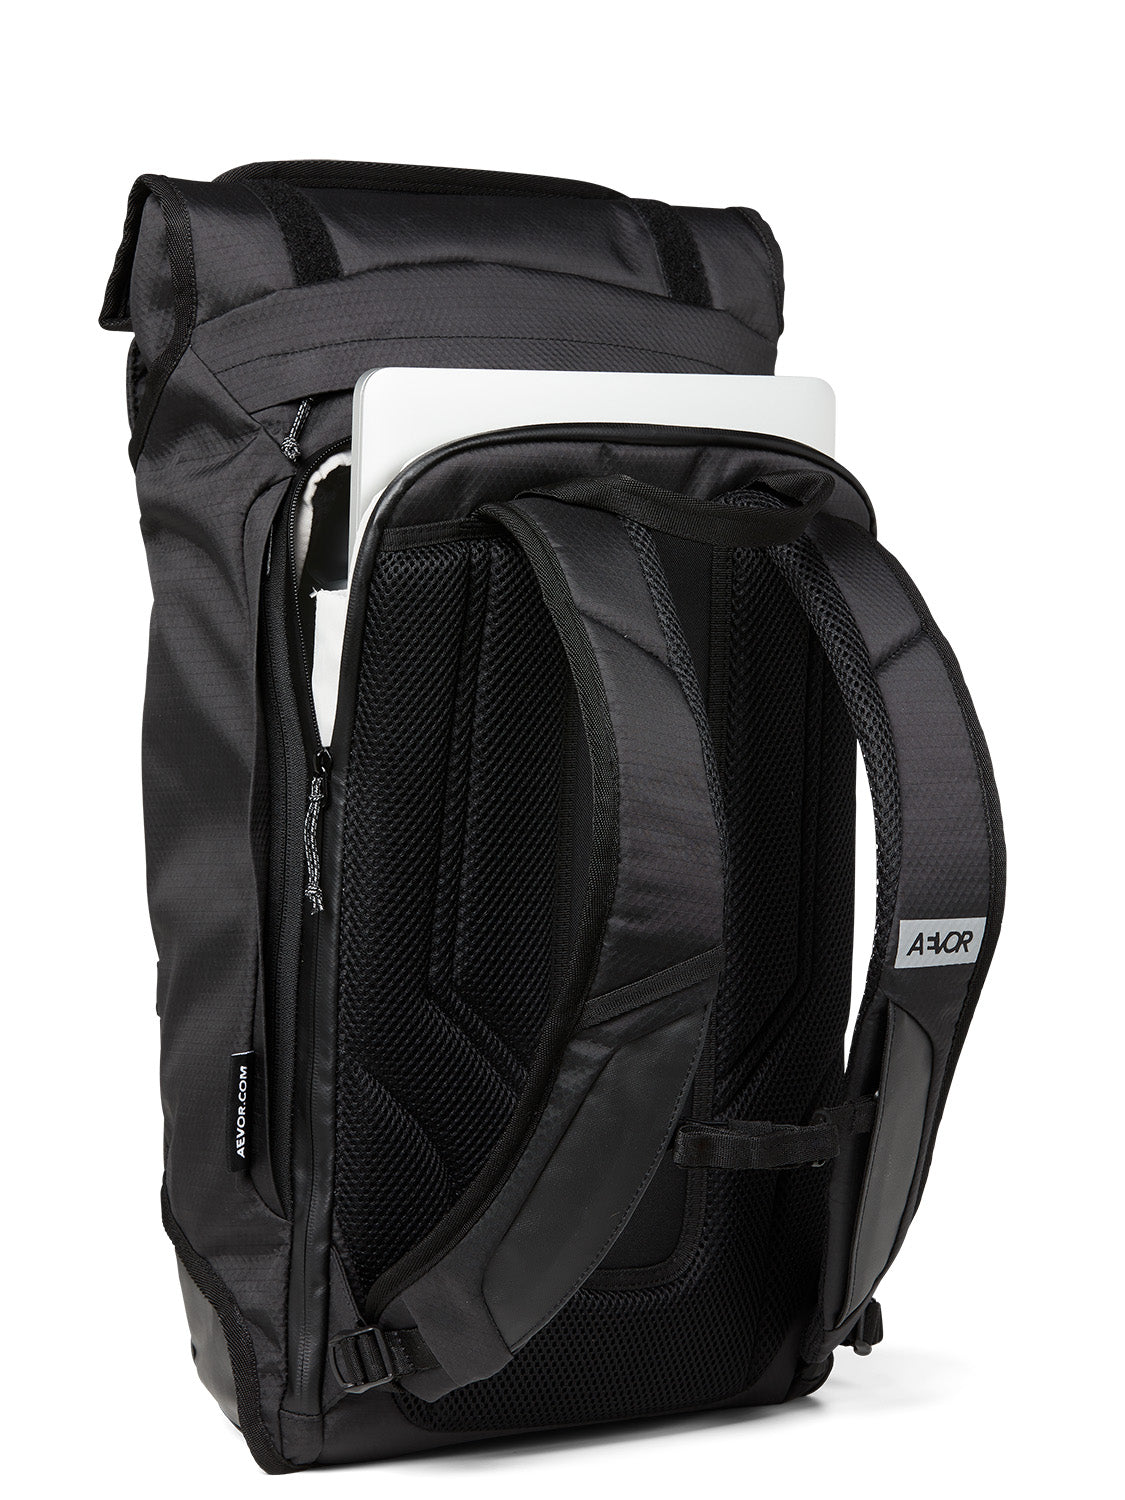 AEVOR-backpack-Trip-Pack-Proof-Black-detail